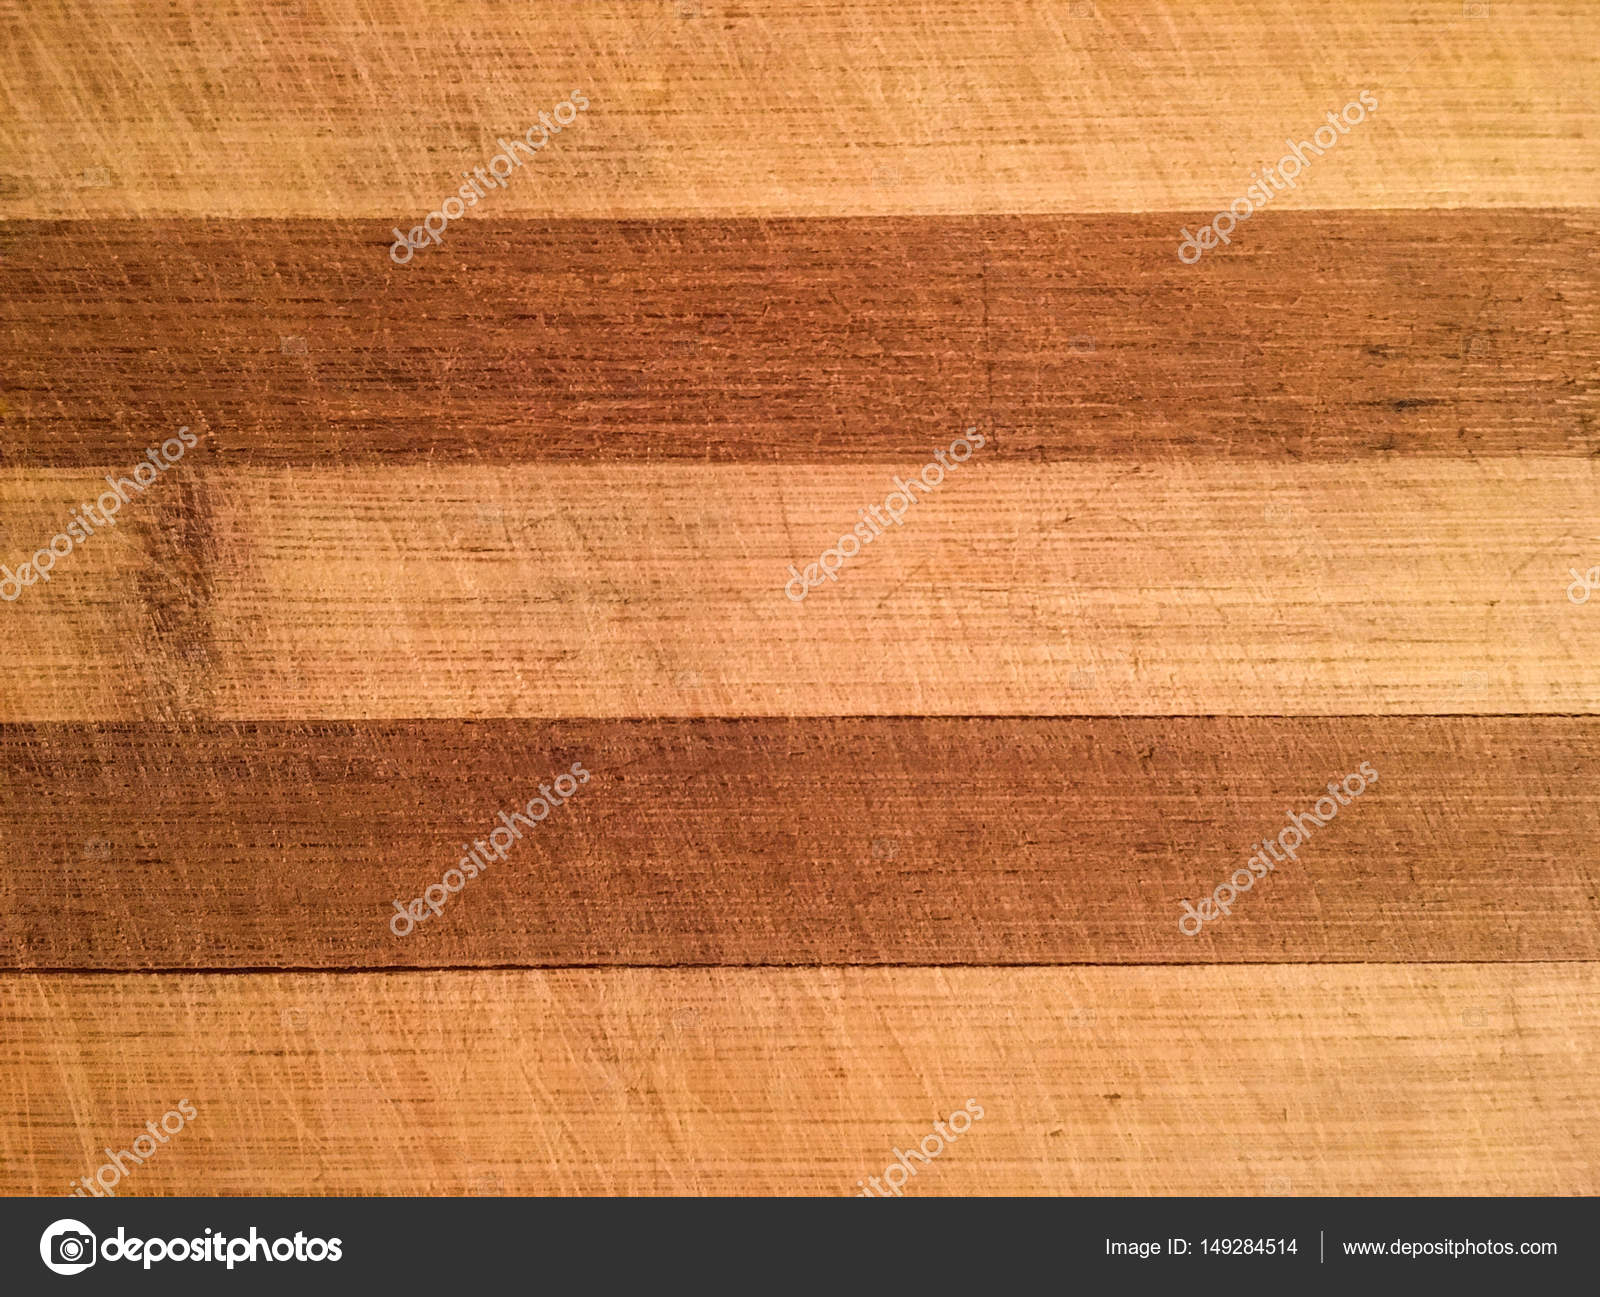 Old grunge wooden cutting kitchen desk board background texture.Wood ...